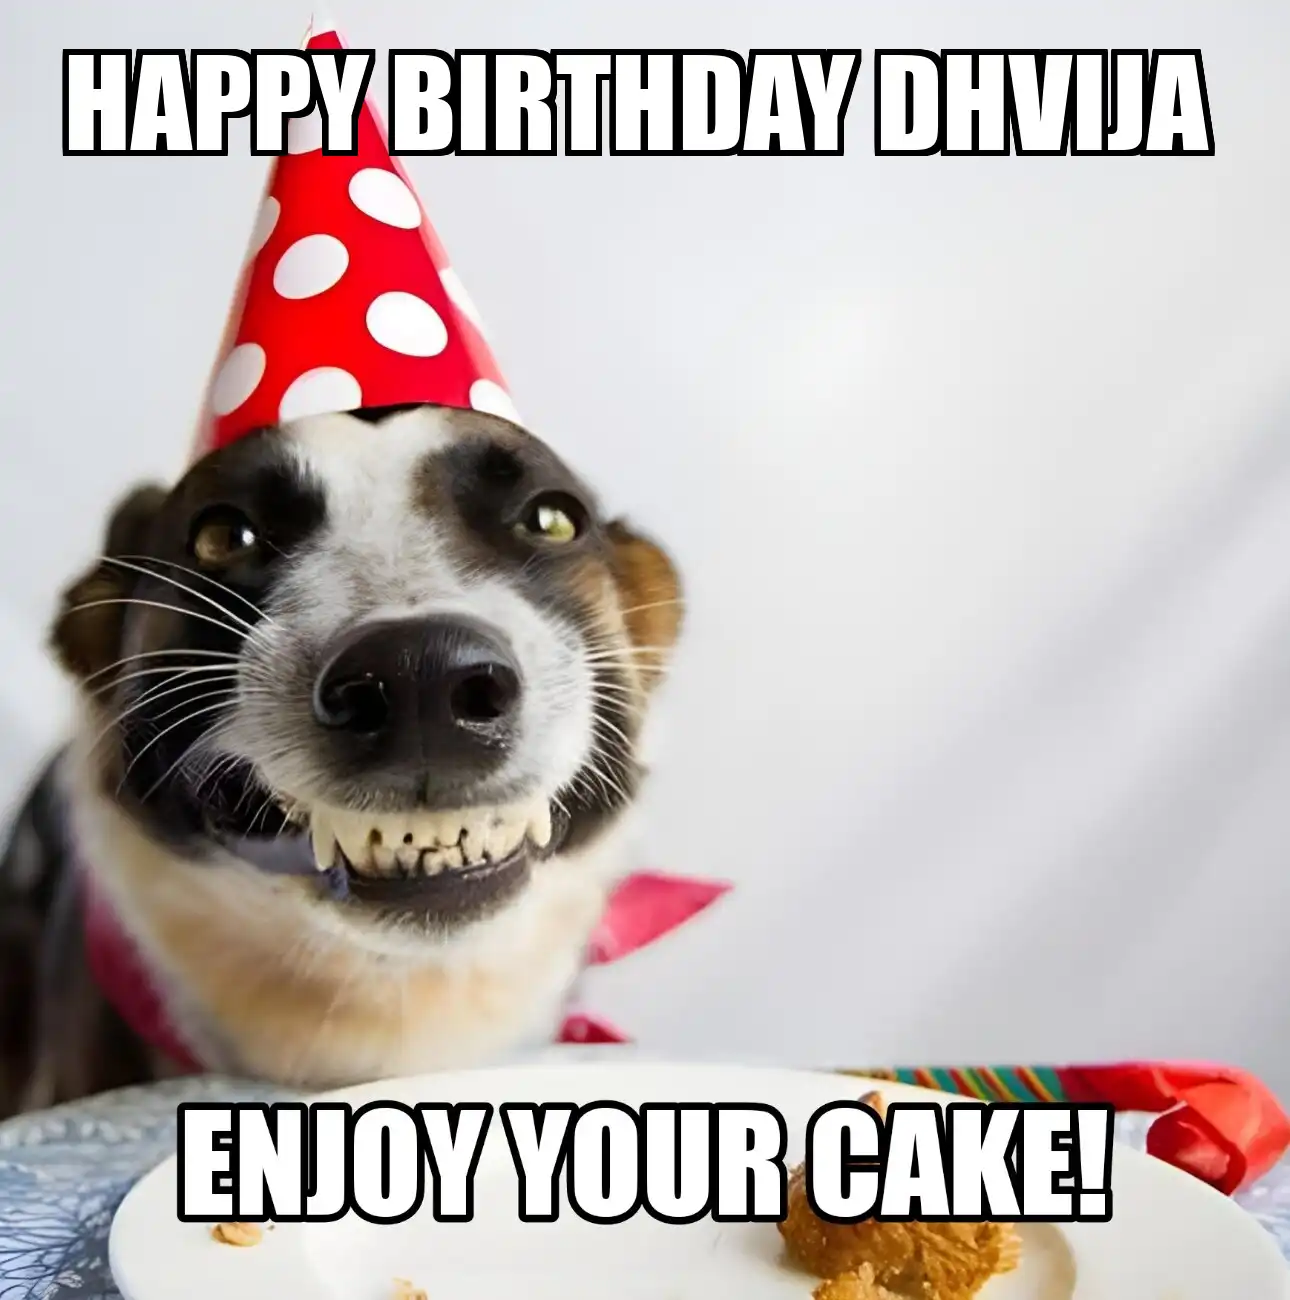 Happy Birthday Dhvija Enjoy Your Cake Dog Meme